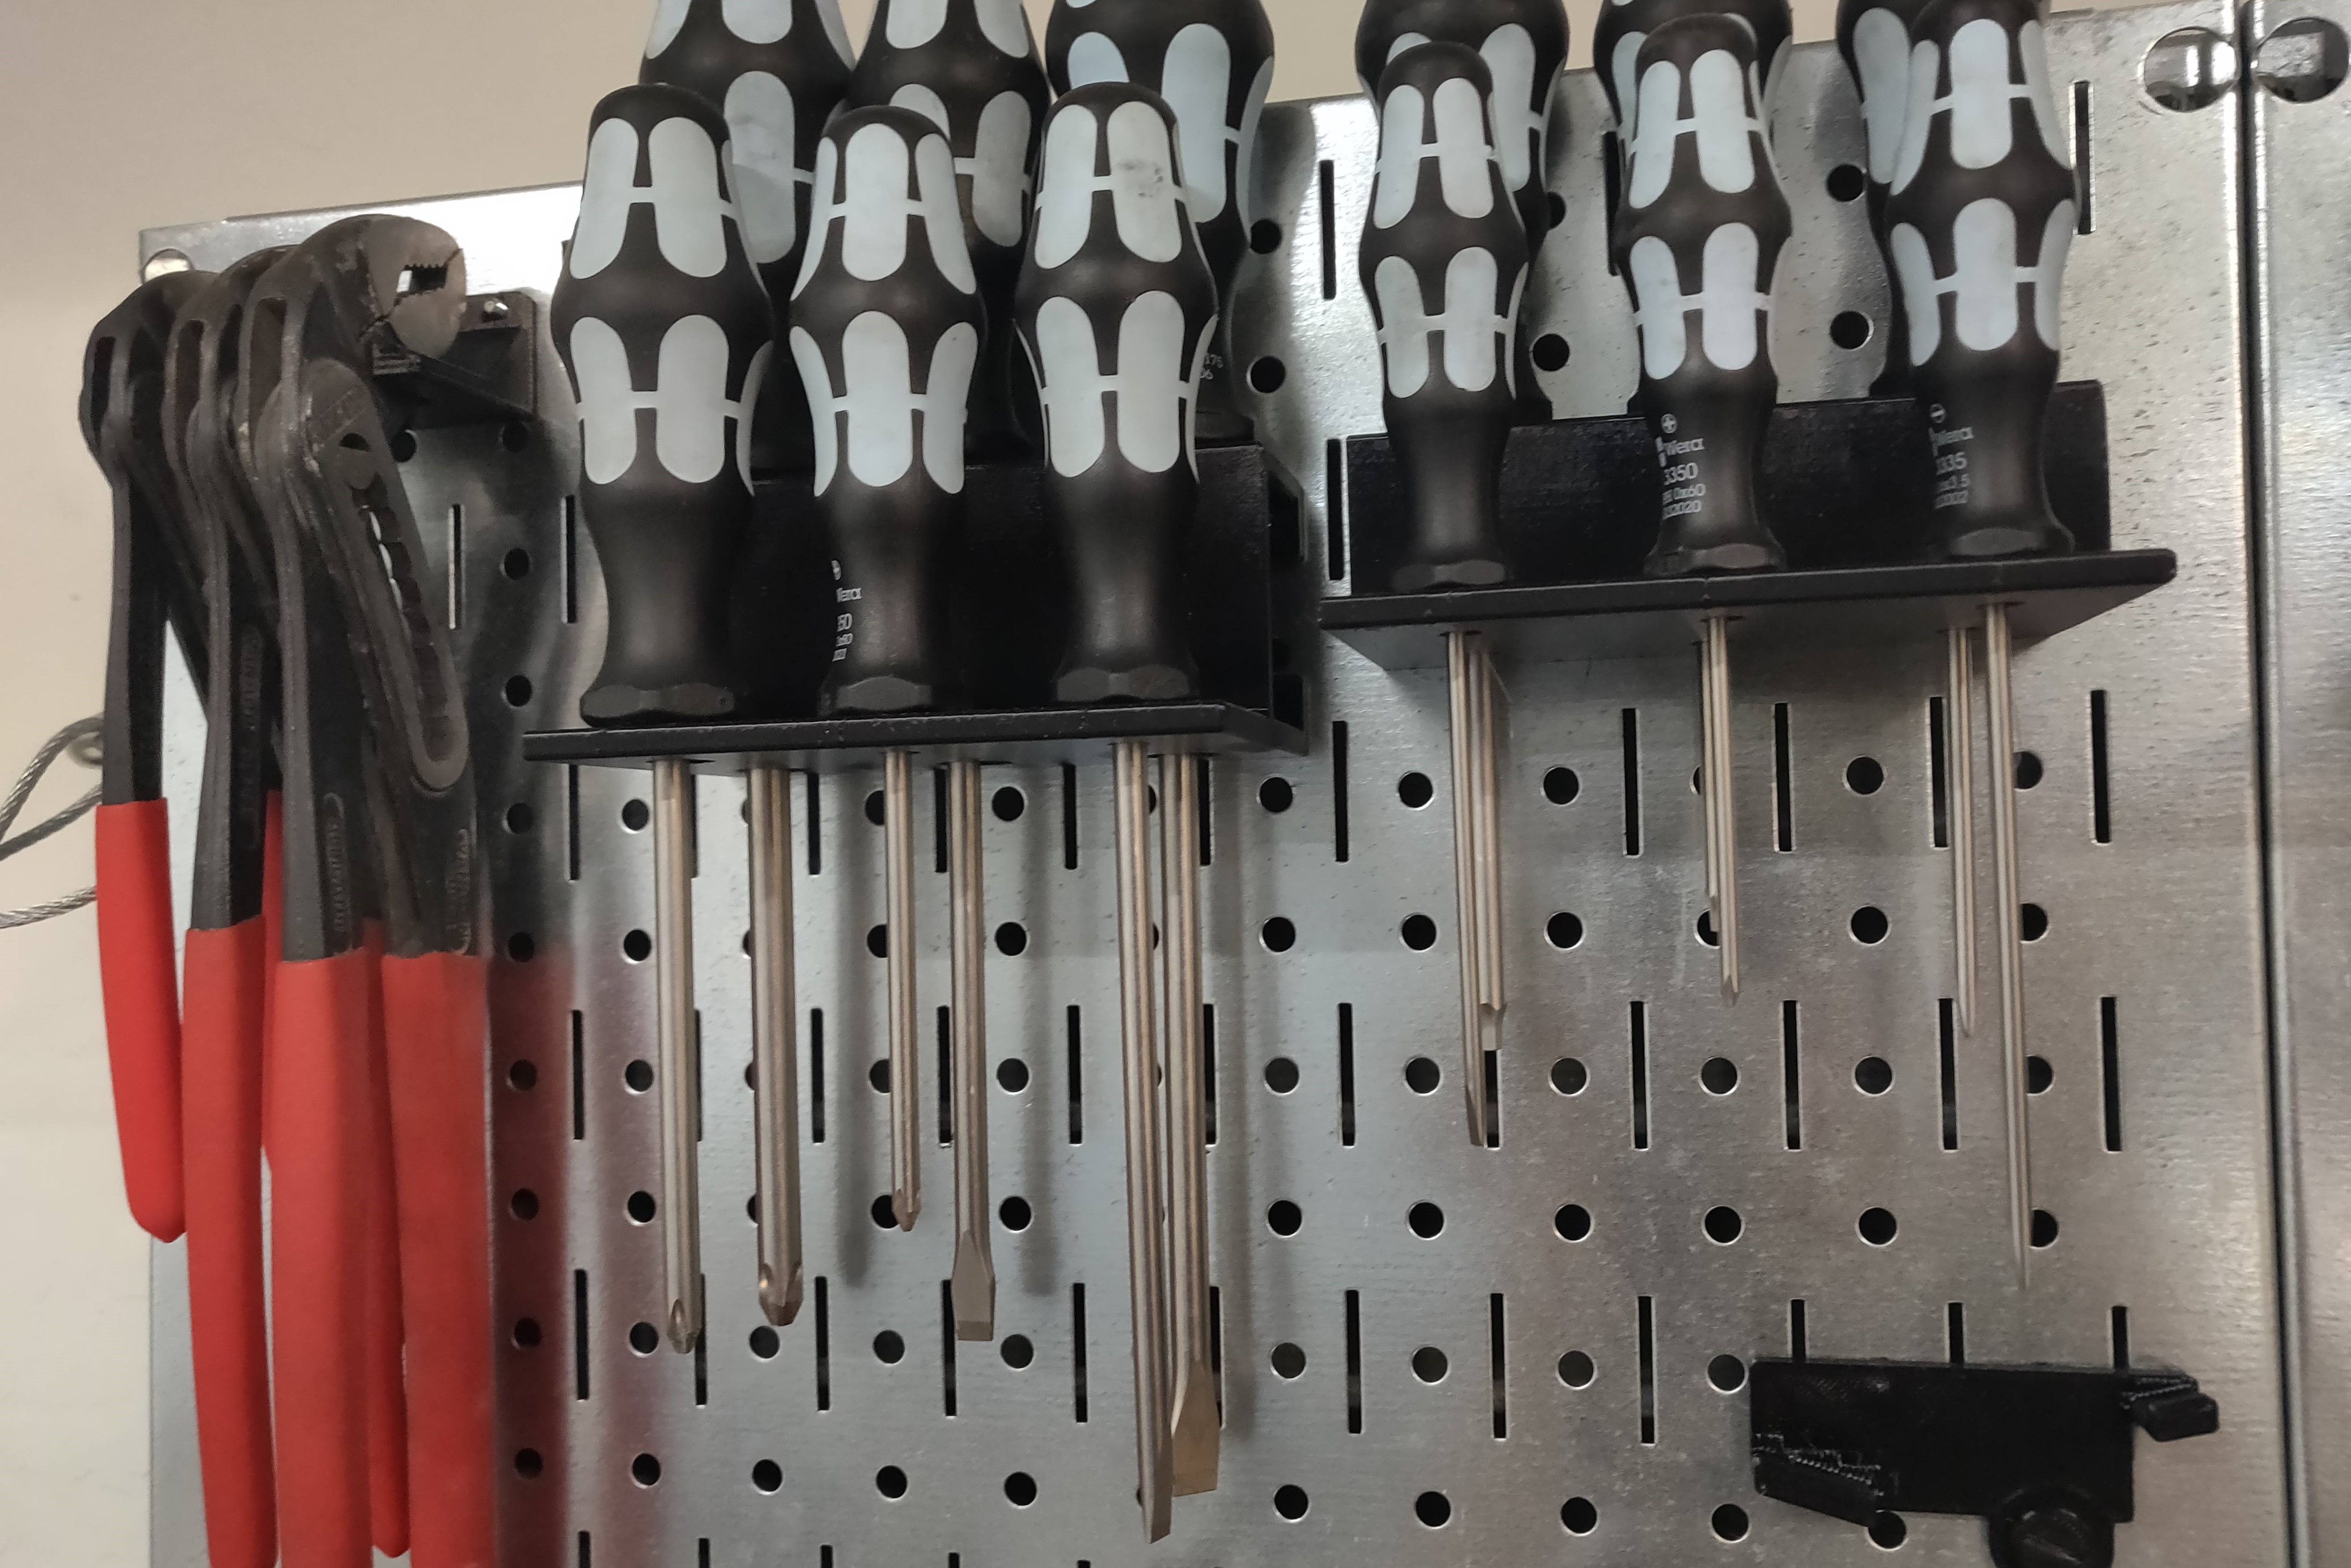 3D printed pegboard tool holders